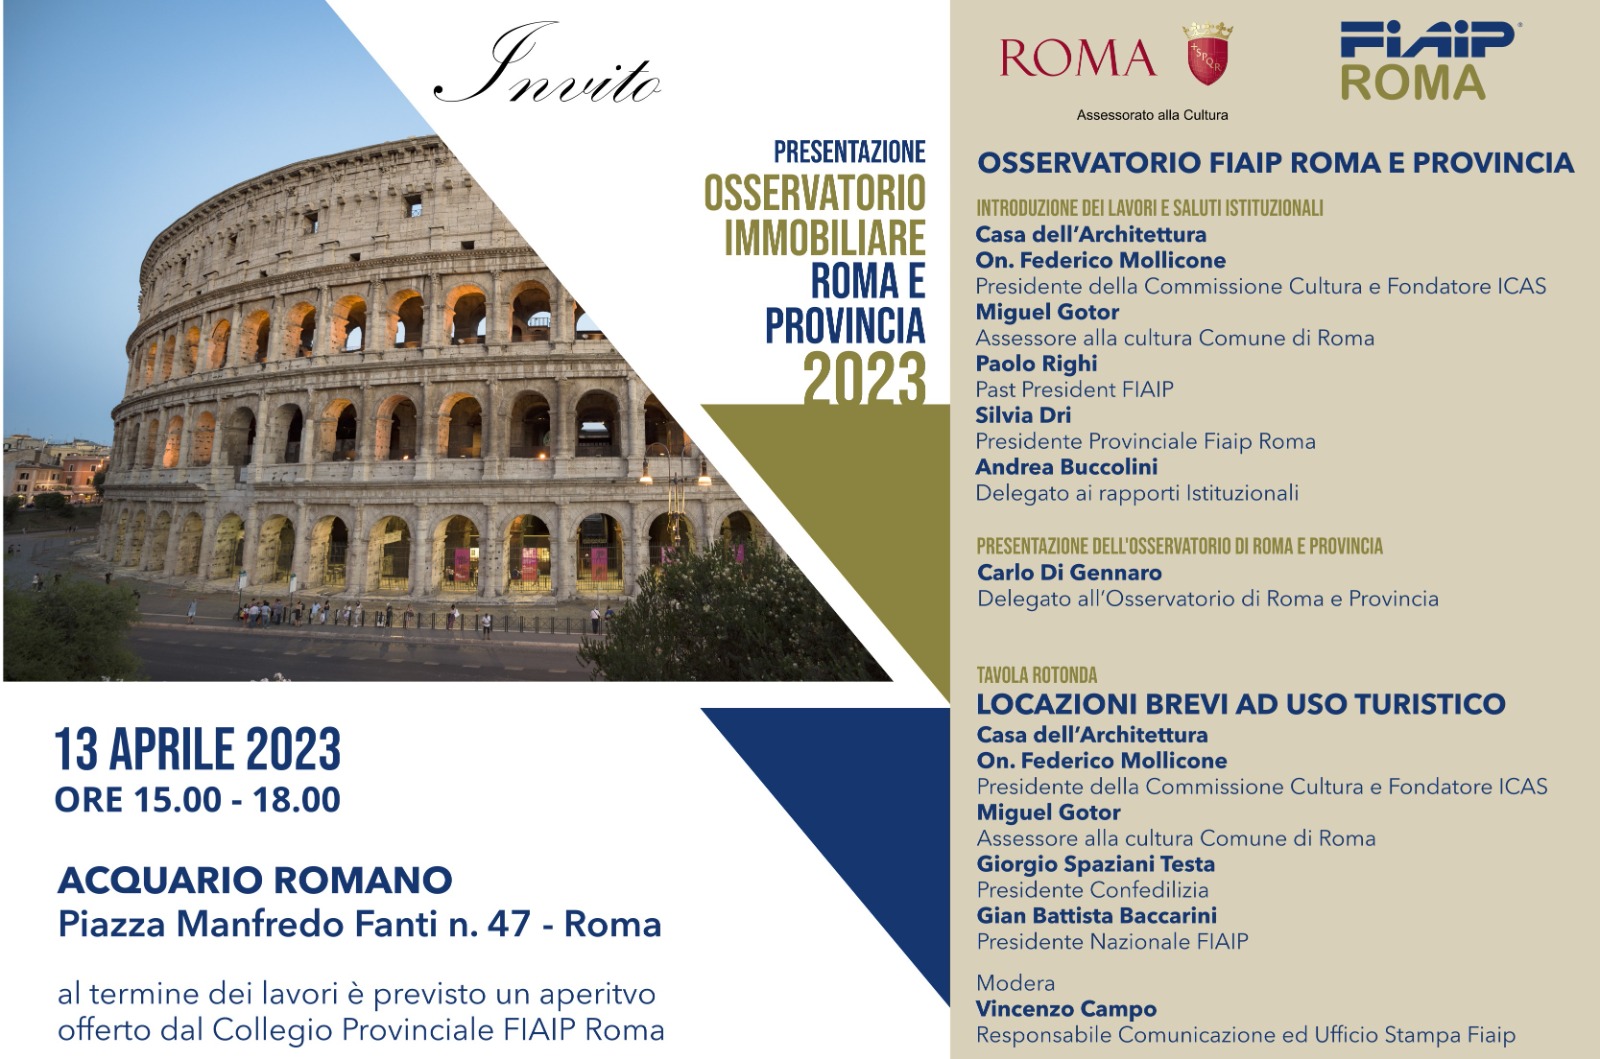 A Roma Giovedi 13 aprile Fiaip presenta l’Osservatorio immobiliare di Roma e Provincia